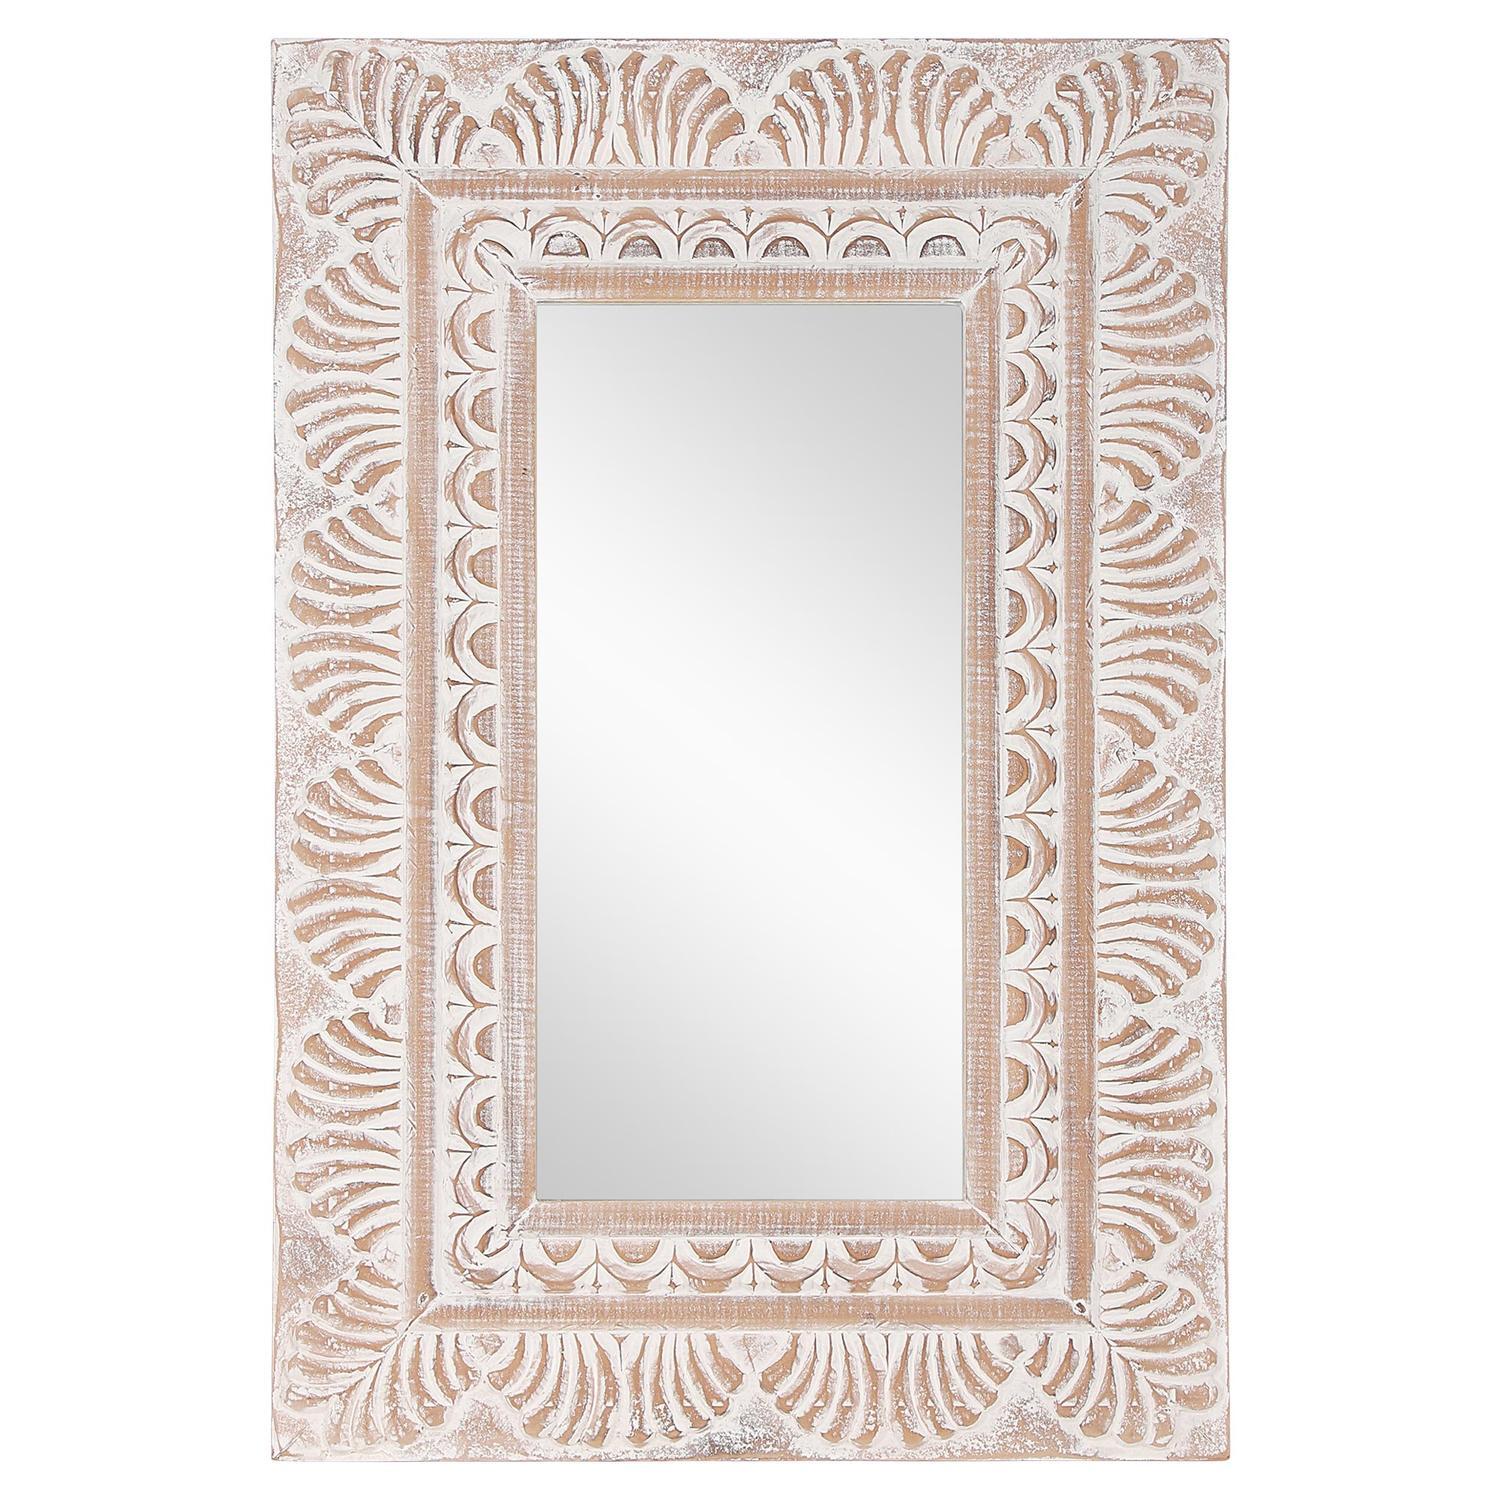 Womo-Design Wall Mirror 60x90cm, ainutlaatuinen, käsintehty peili, jossa on  - Gigantti verkkokauppa